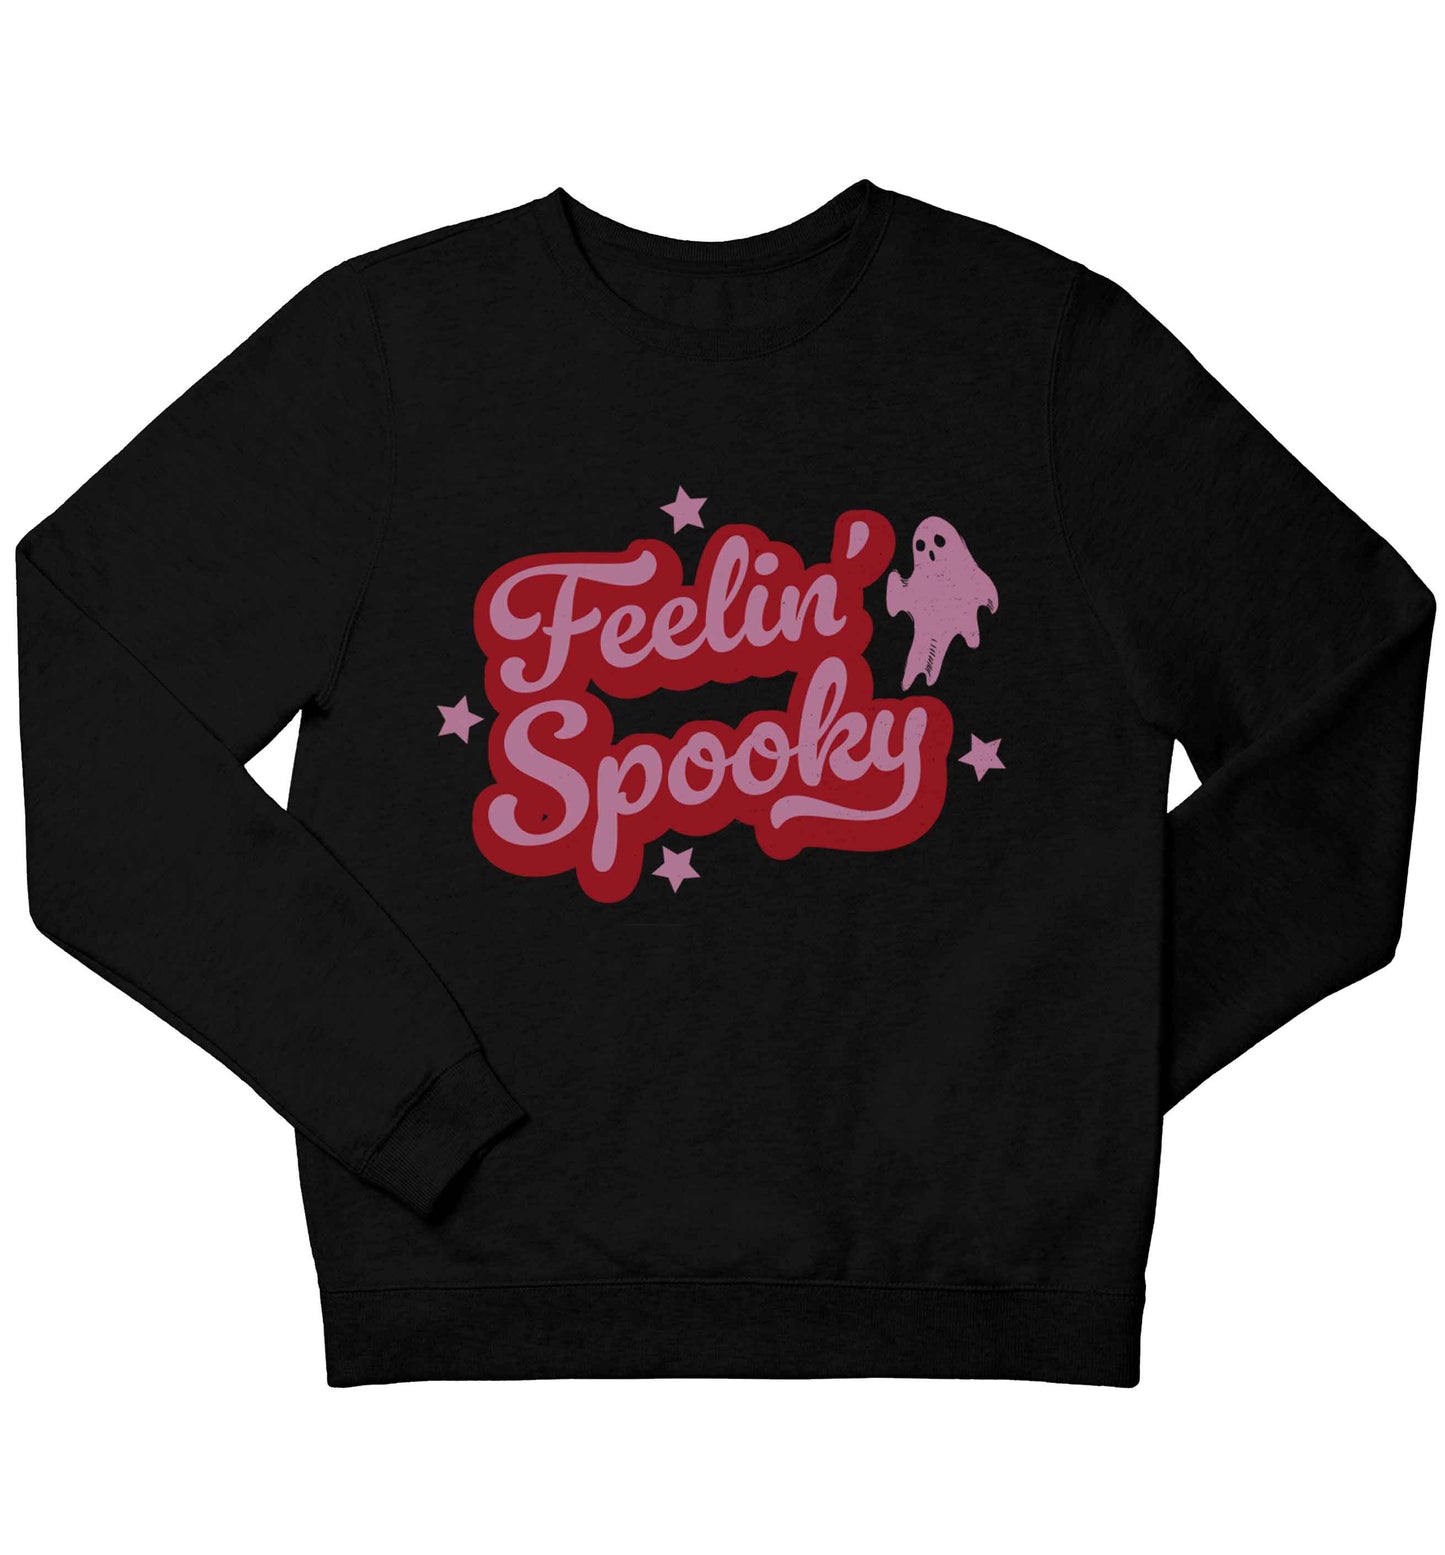 Feelin' Spooky Kit children's black sweater 12-13 Years